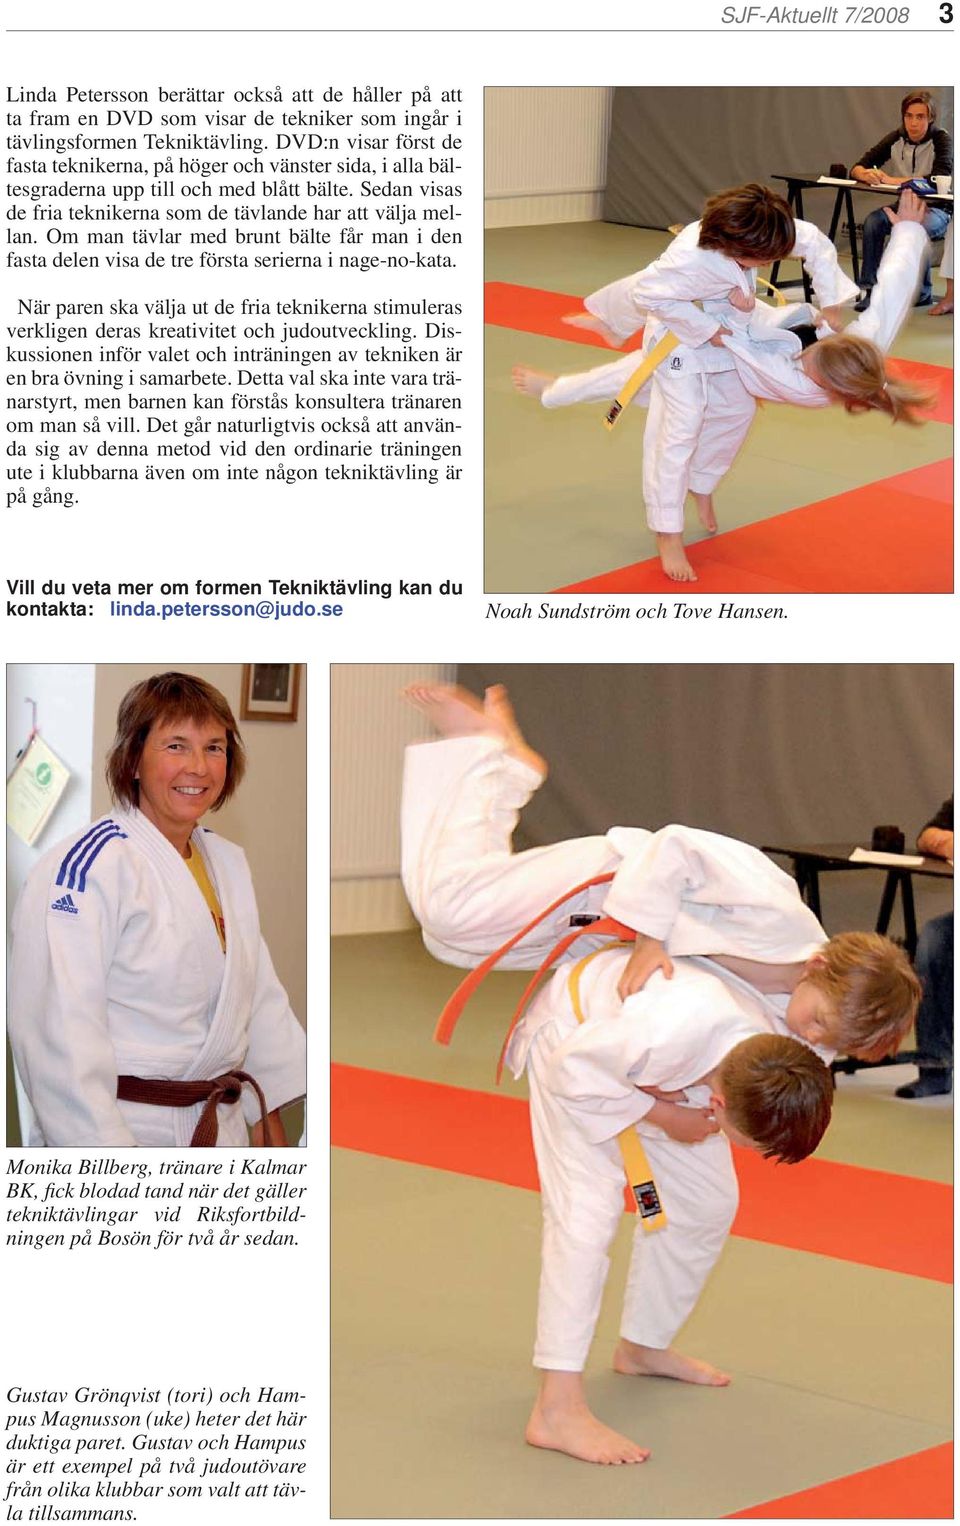 Om man tävlar med brunt bälte får man i den fasta delen visa de tre första serierna i nage-no-kata. När paren ska välja ut de fria teknikerna stimuleras verkligen deras kreativitet och judoutveckling.